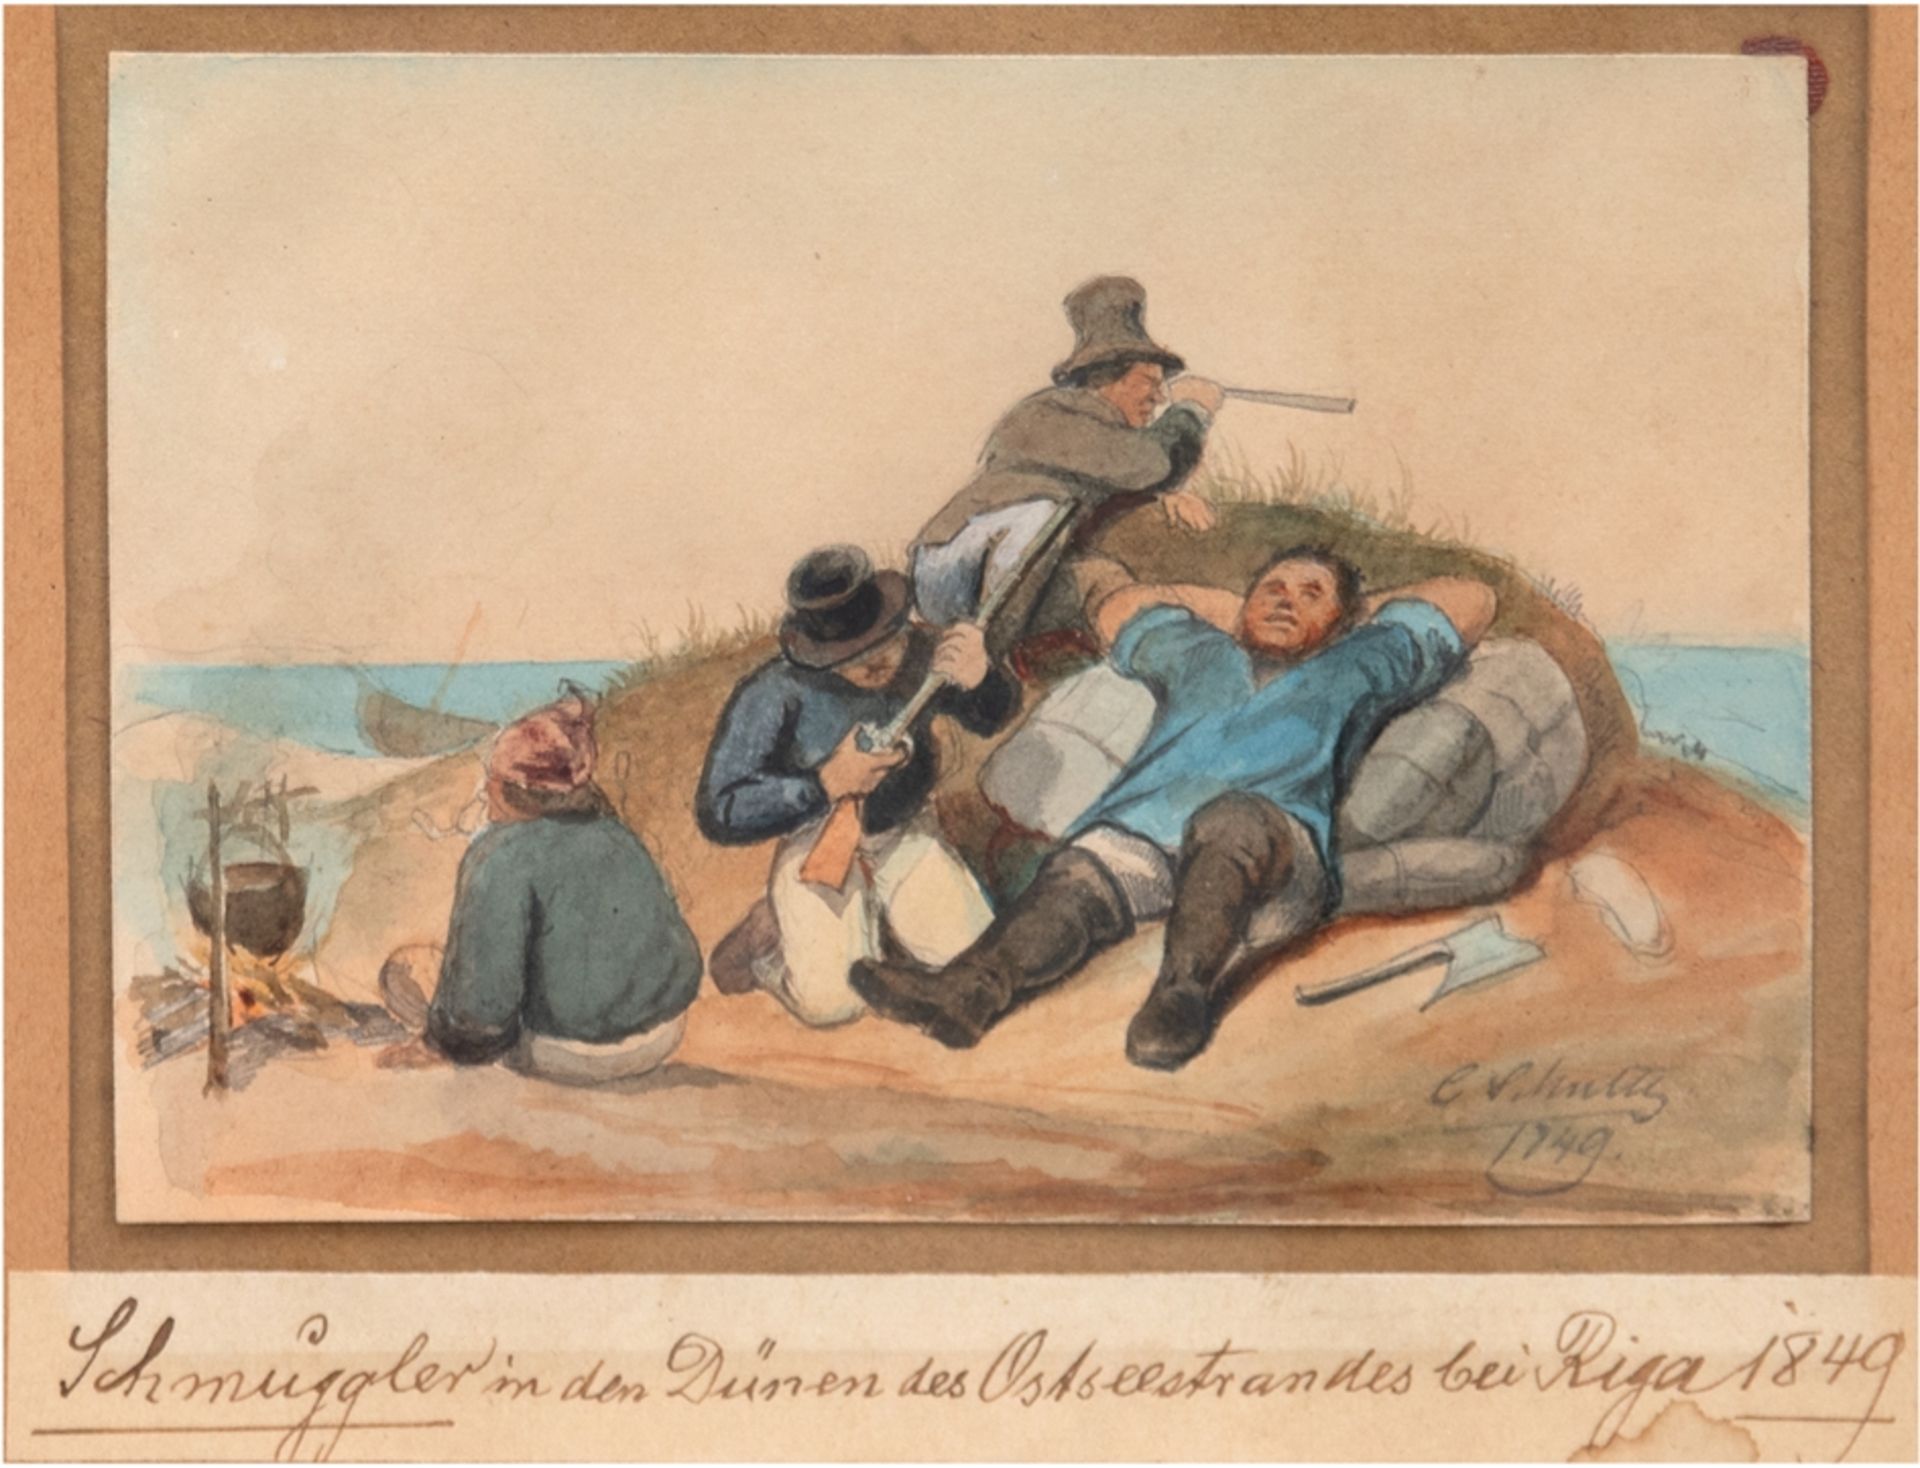 Schulz, Carl Friedrich (1796 Selchow-1846 Neuruppin) "Schmuggler in den Dünen des Ostseestrandes be